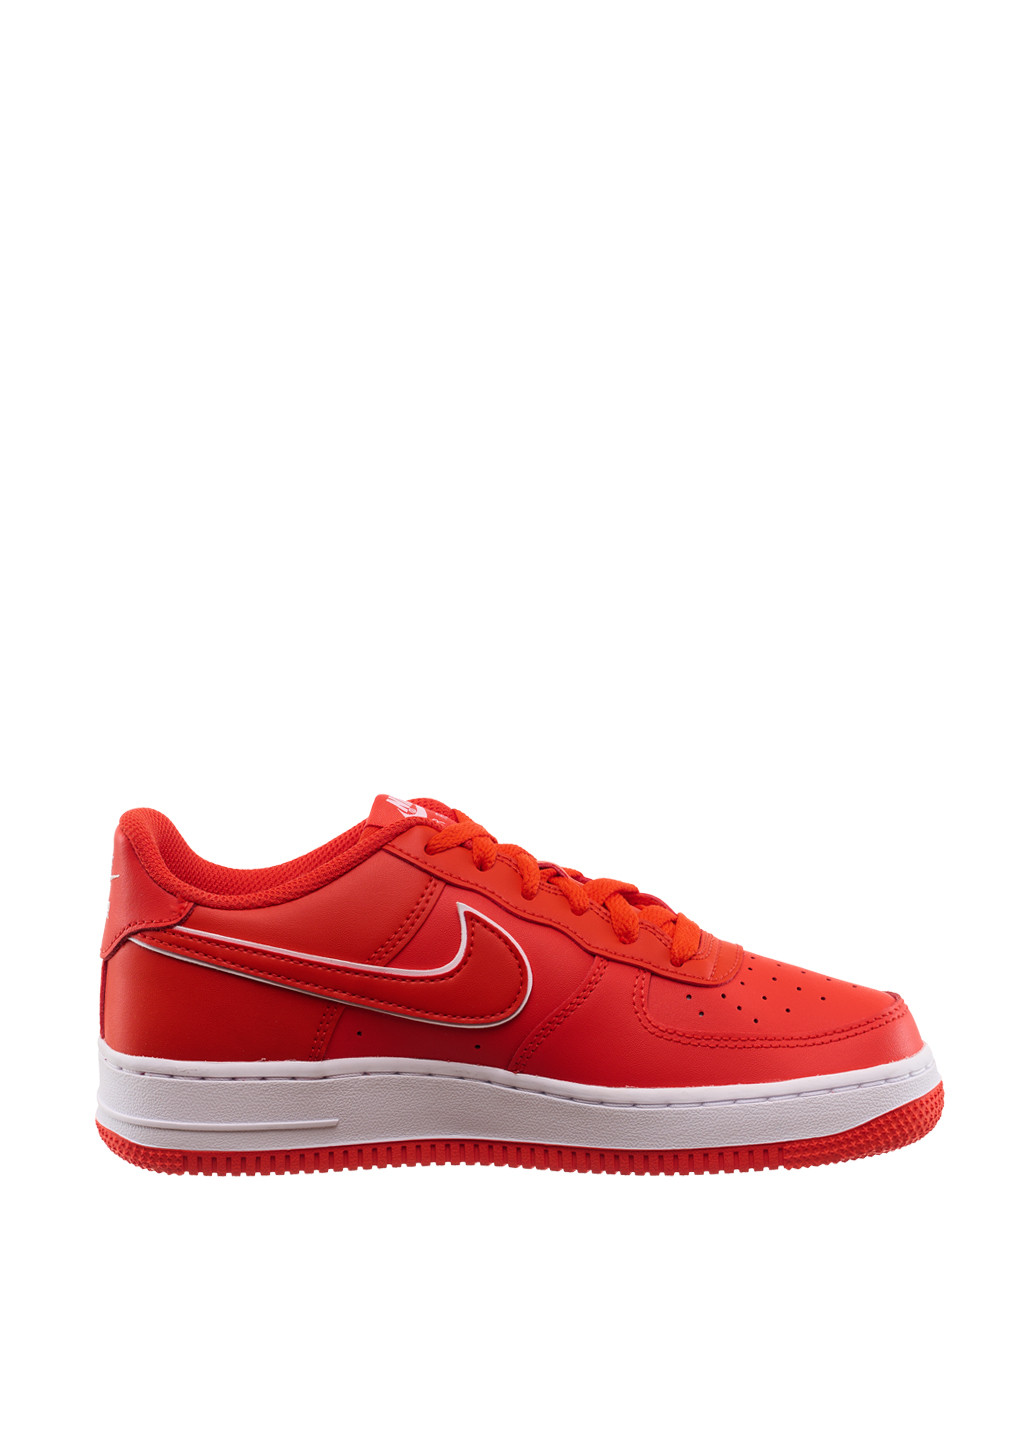 Червоні осінні кросівки dx5805-600_2024 Nike Air Force 1 Gs